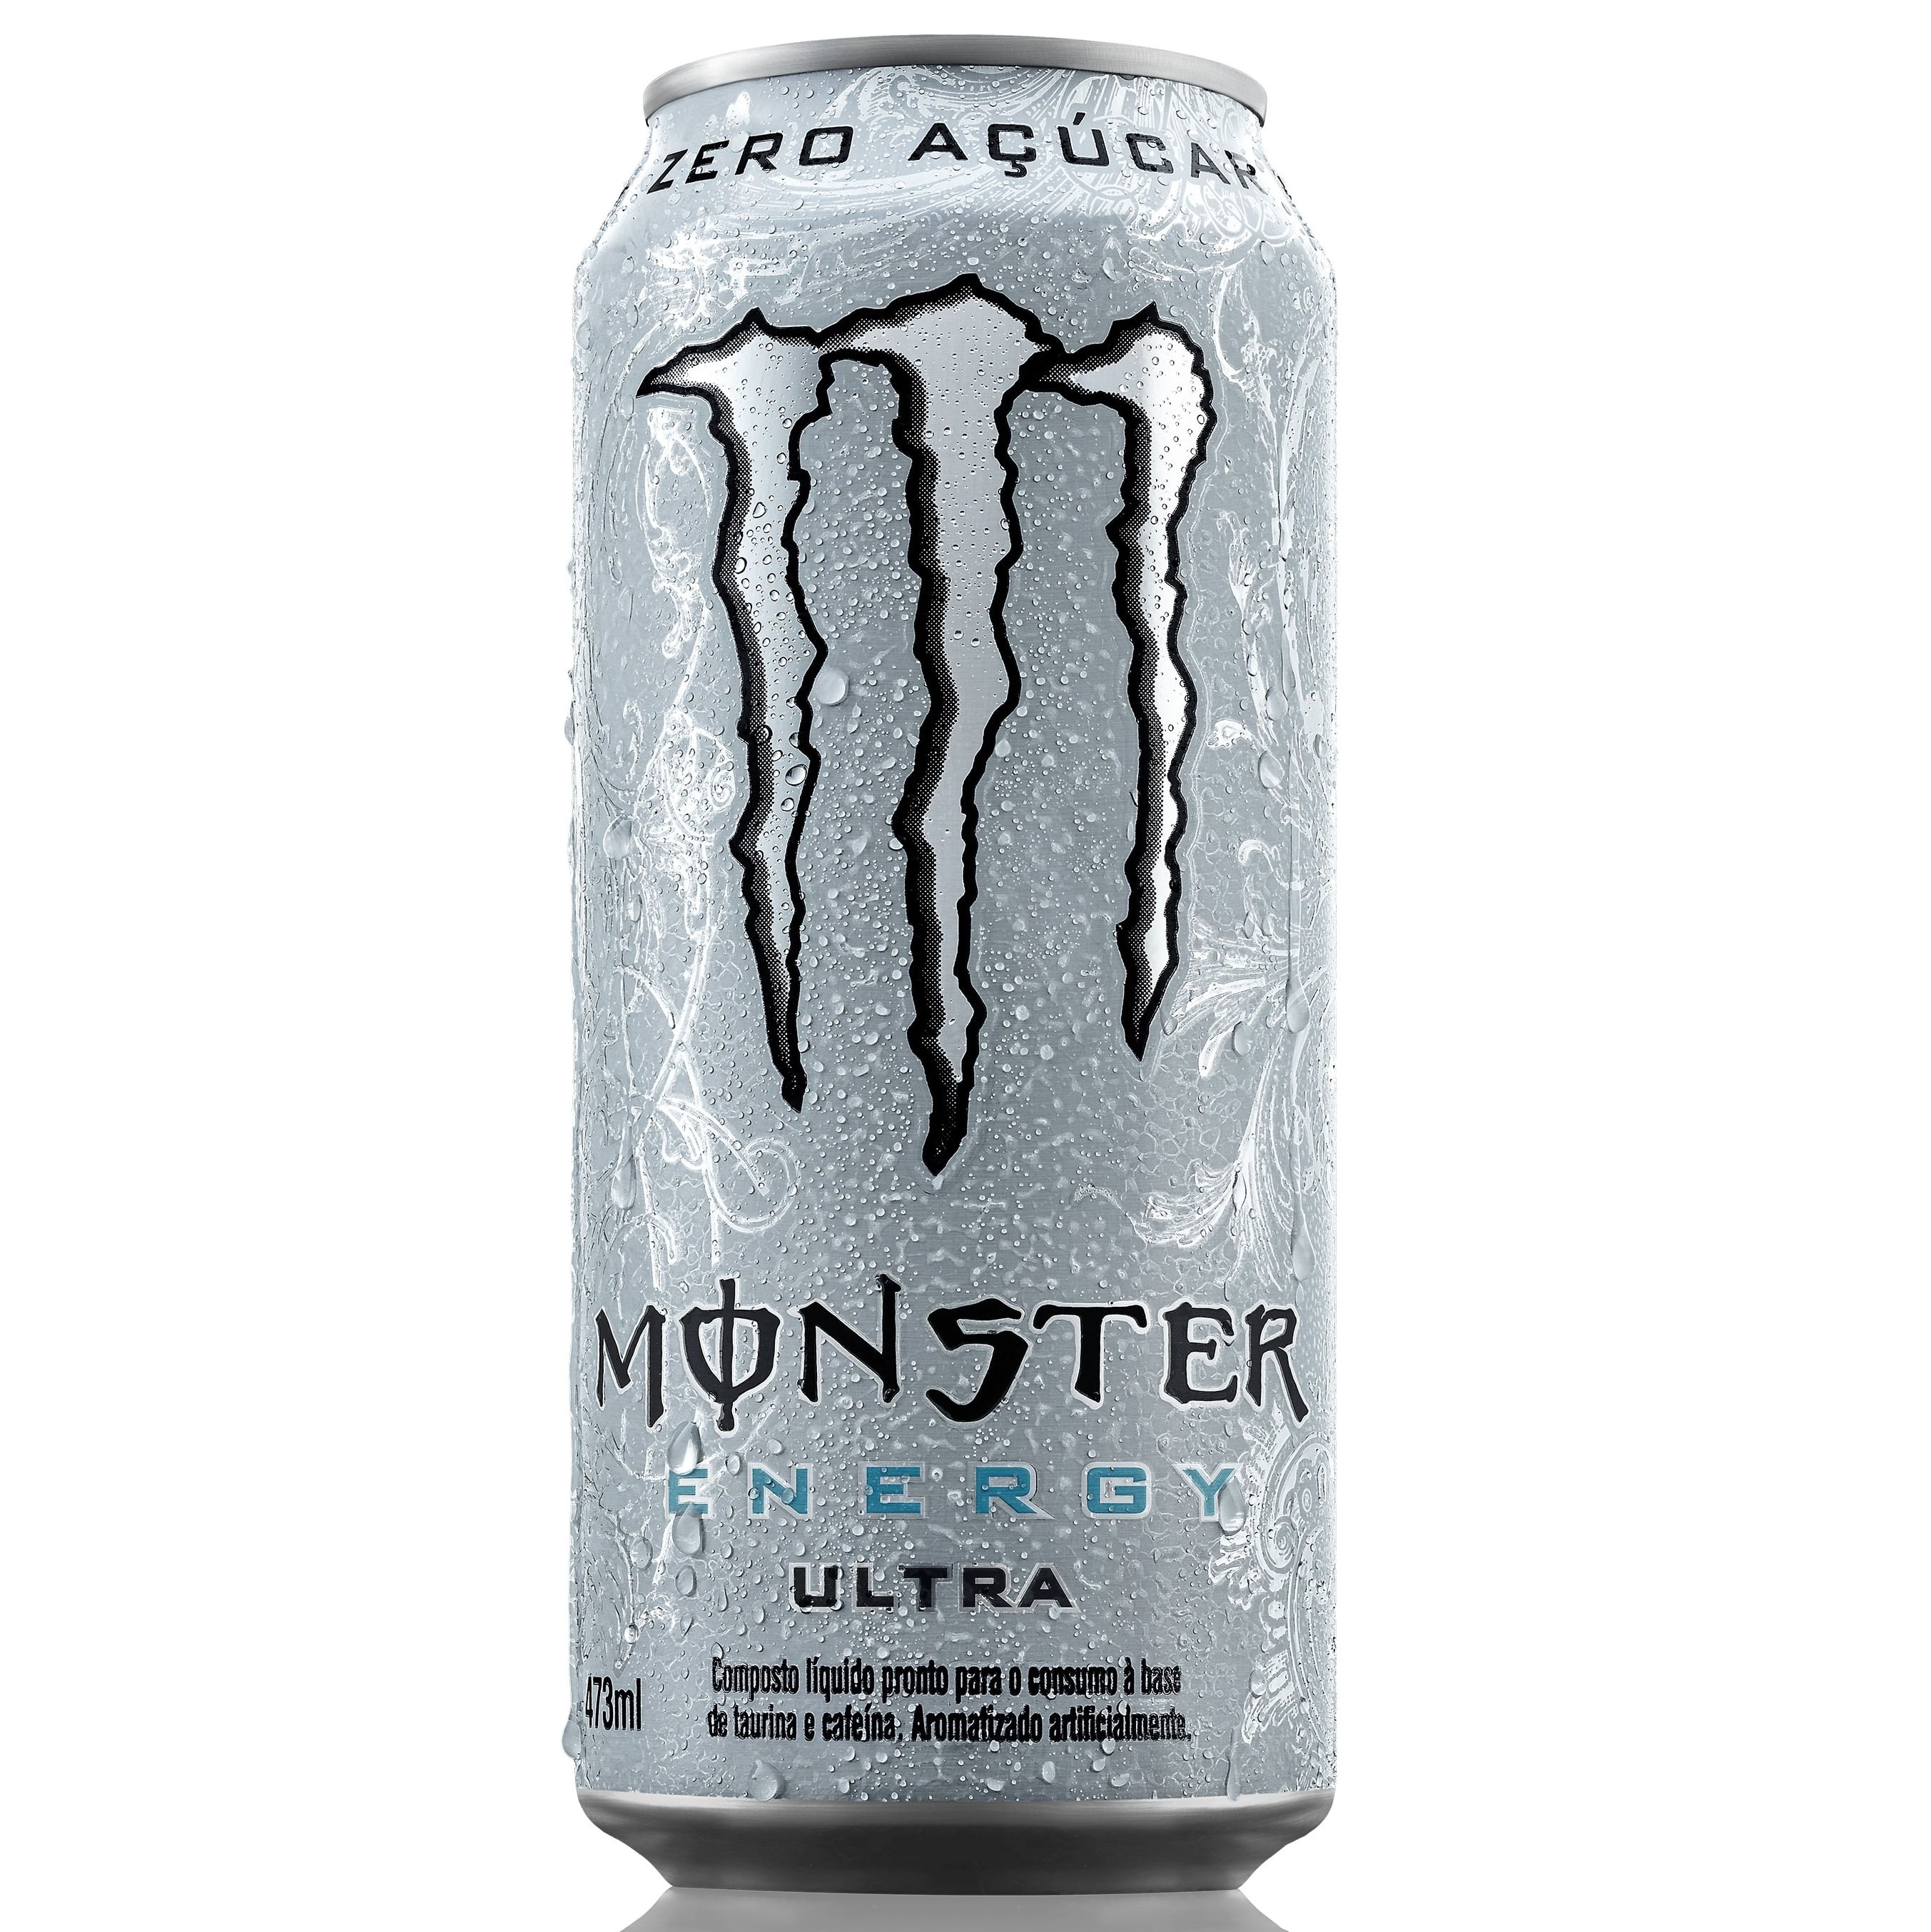 Monster está perto de adquirir rival Bang Energy por US$ 362 milhões